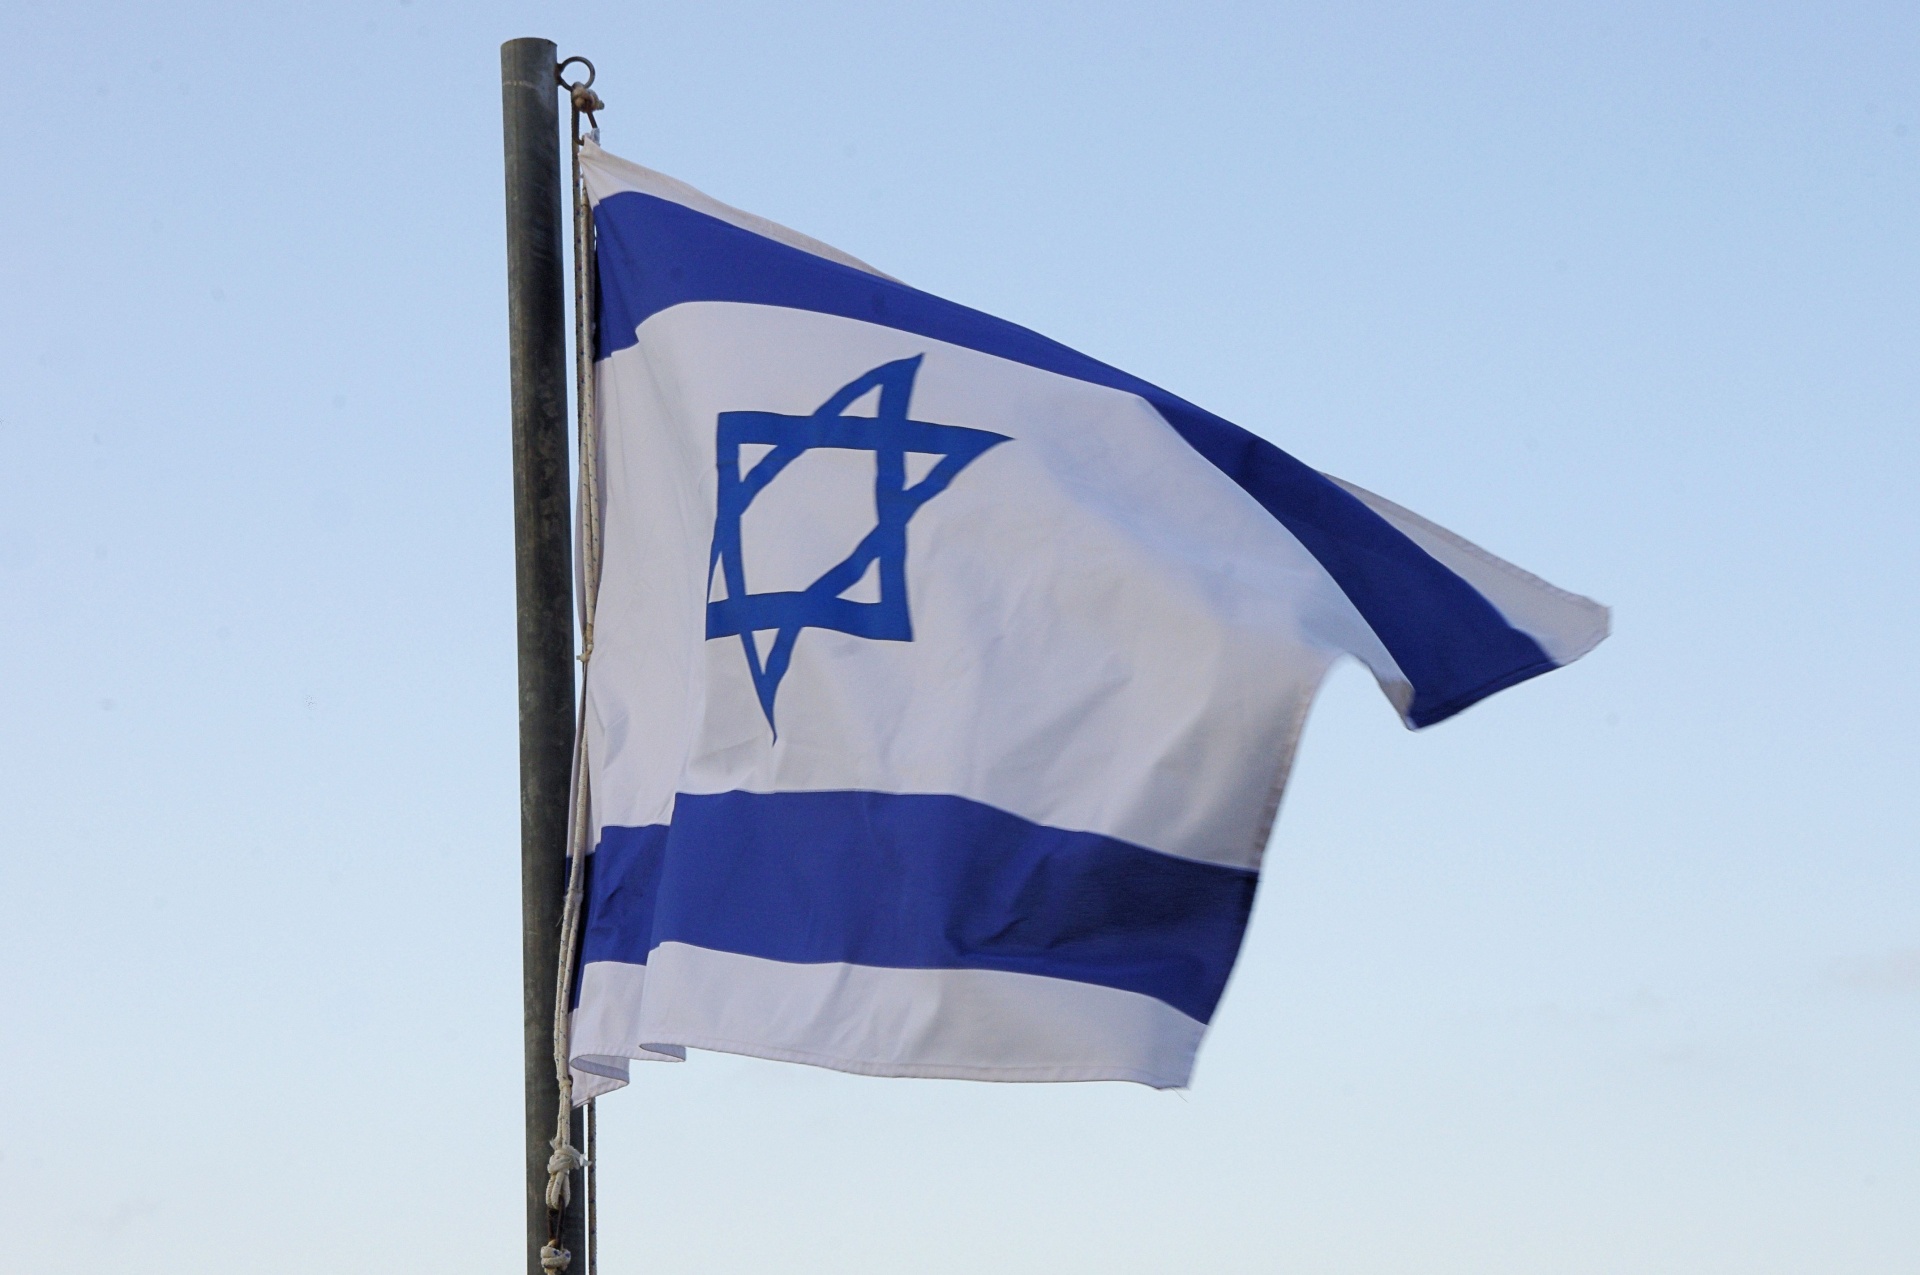 Israeli flag against blue sky